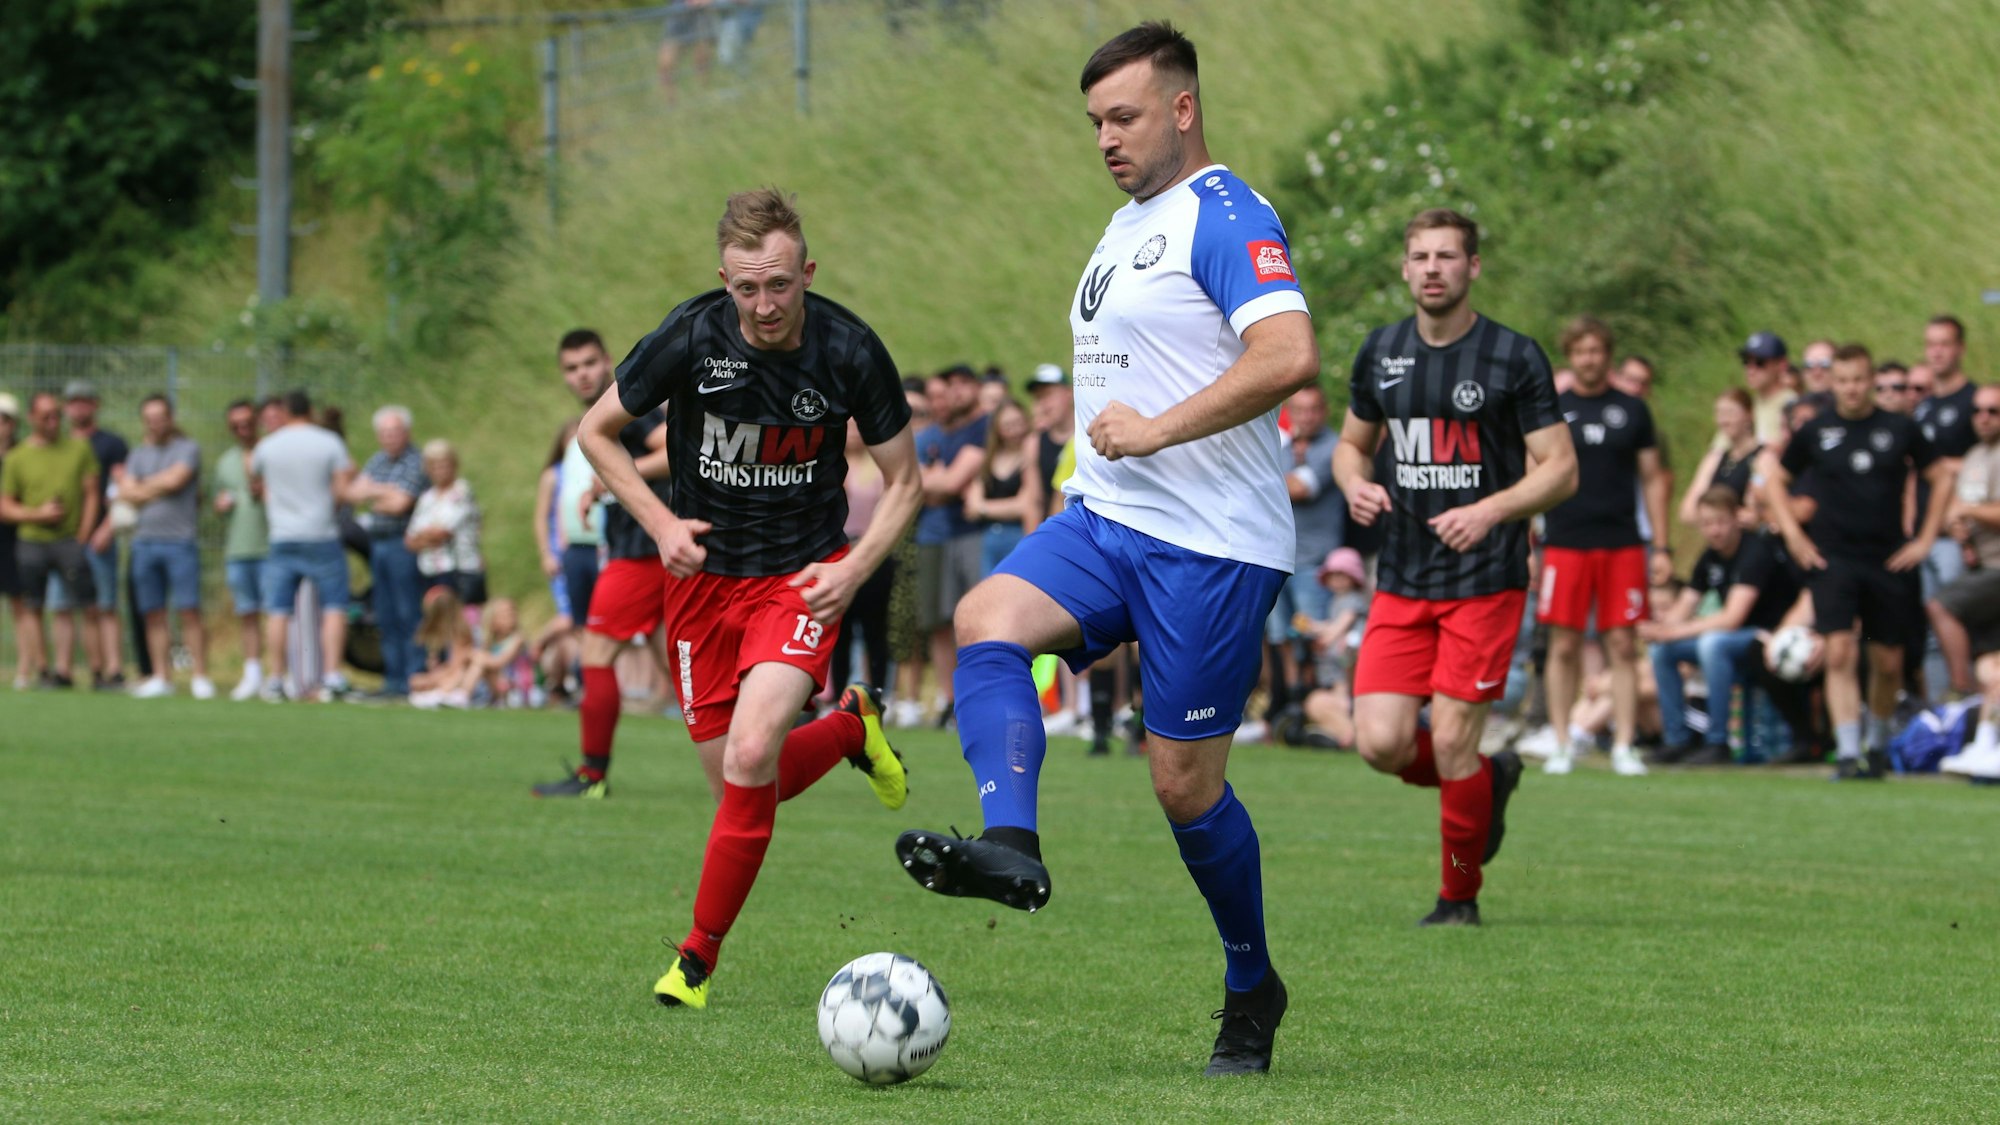 Ein Spieler des SC Roitzheims führt den Ball, der Spieler der SG 92 läuft hinterher.